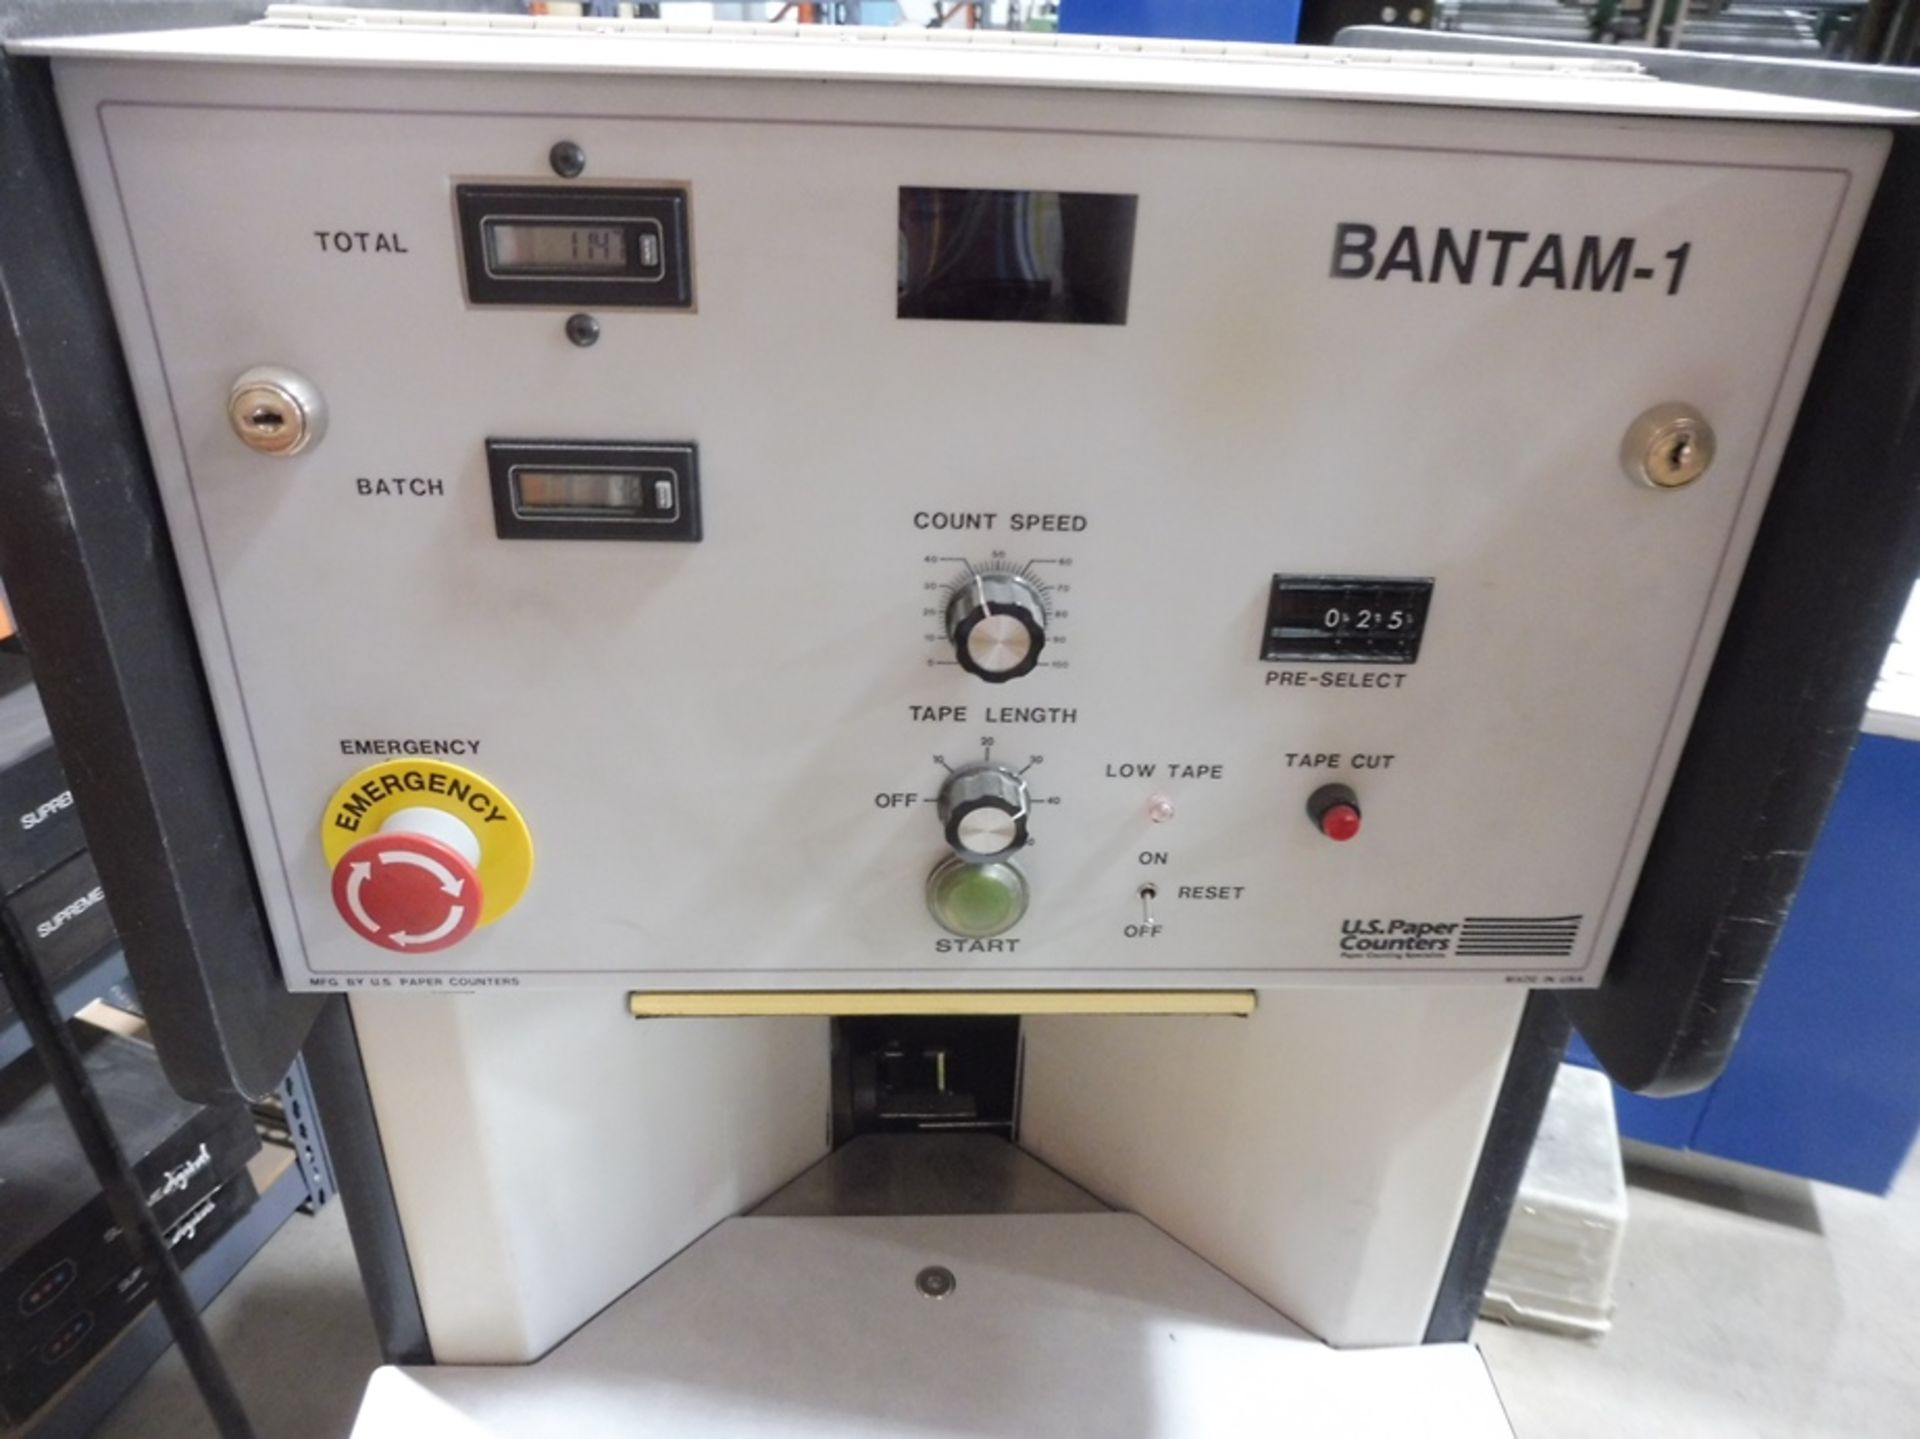 2005 BANTAM "BAN.1" Sheet Tabbing/Counting Machine, S/N: 539095, (North York Facility) - Image 3 of 4